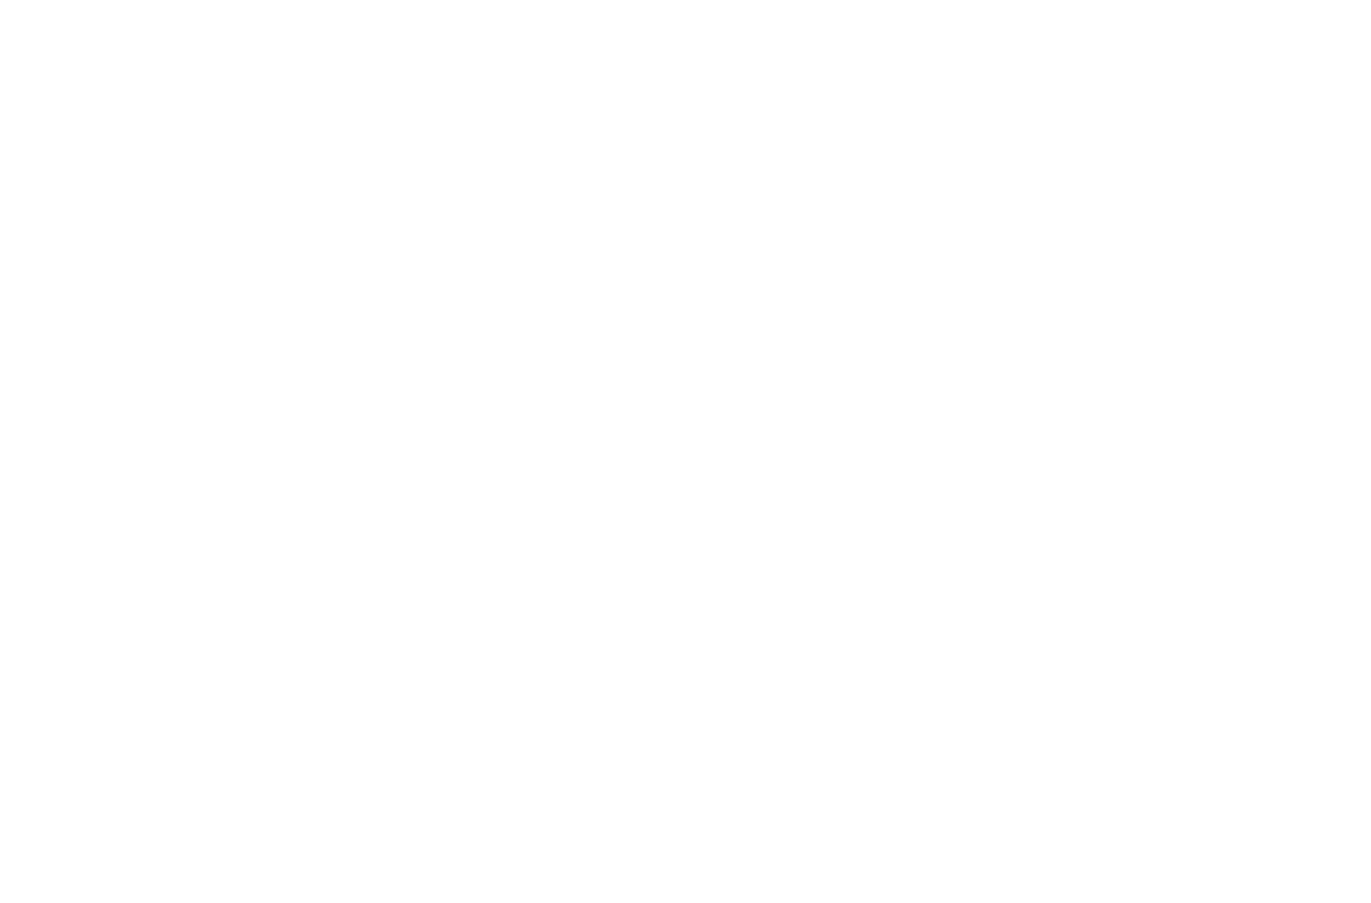 Кейс сервиса BRANDNATION - Дизайн упаковки сигарет для табачной компании. Брендинговое агентство BRANDNATION в Москве и Санкт-Петербурге. Услуги: разработка логотипа и фирменного стиля, дизайн упаковки, брендбук, ребрендинг, разработка сайта.